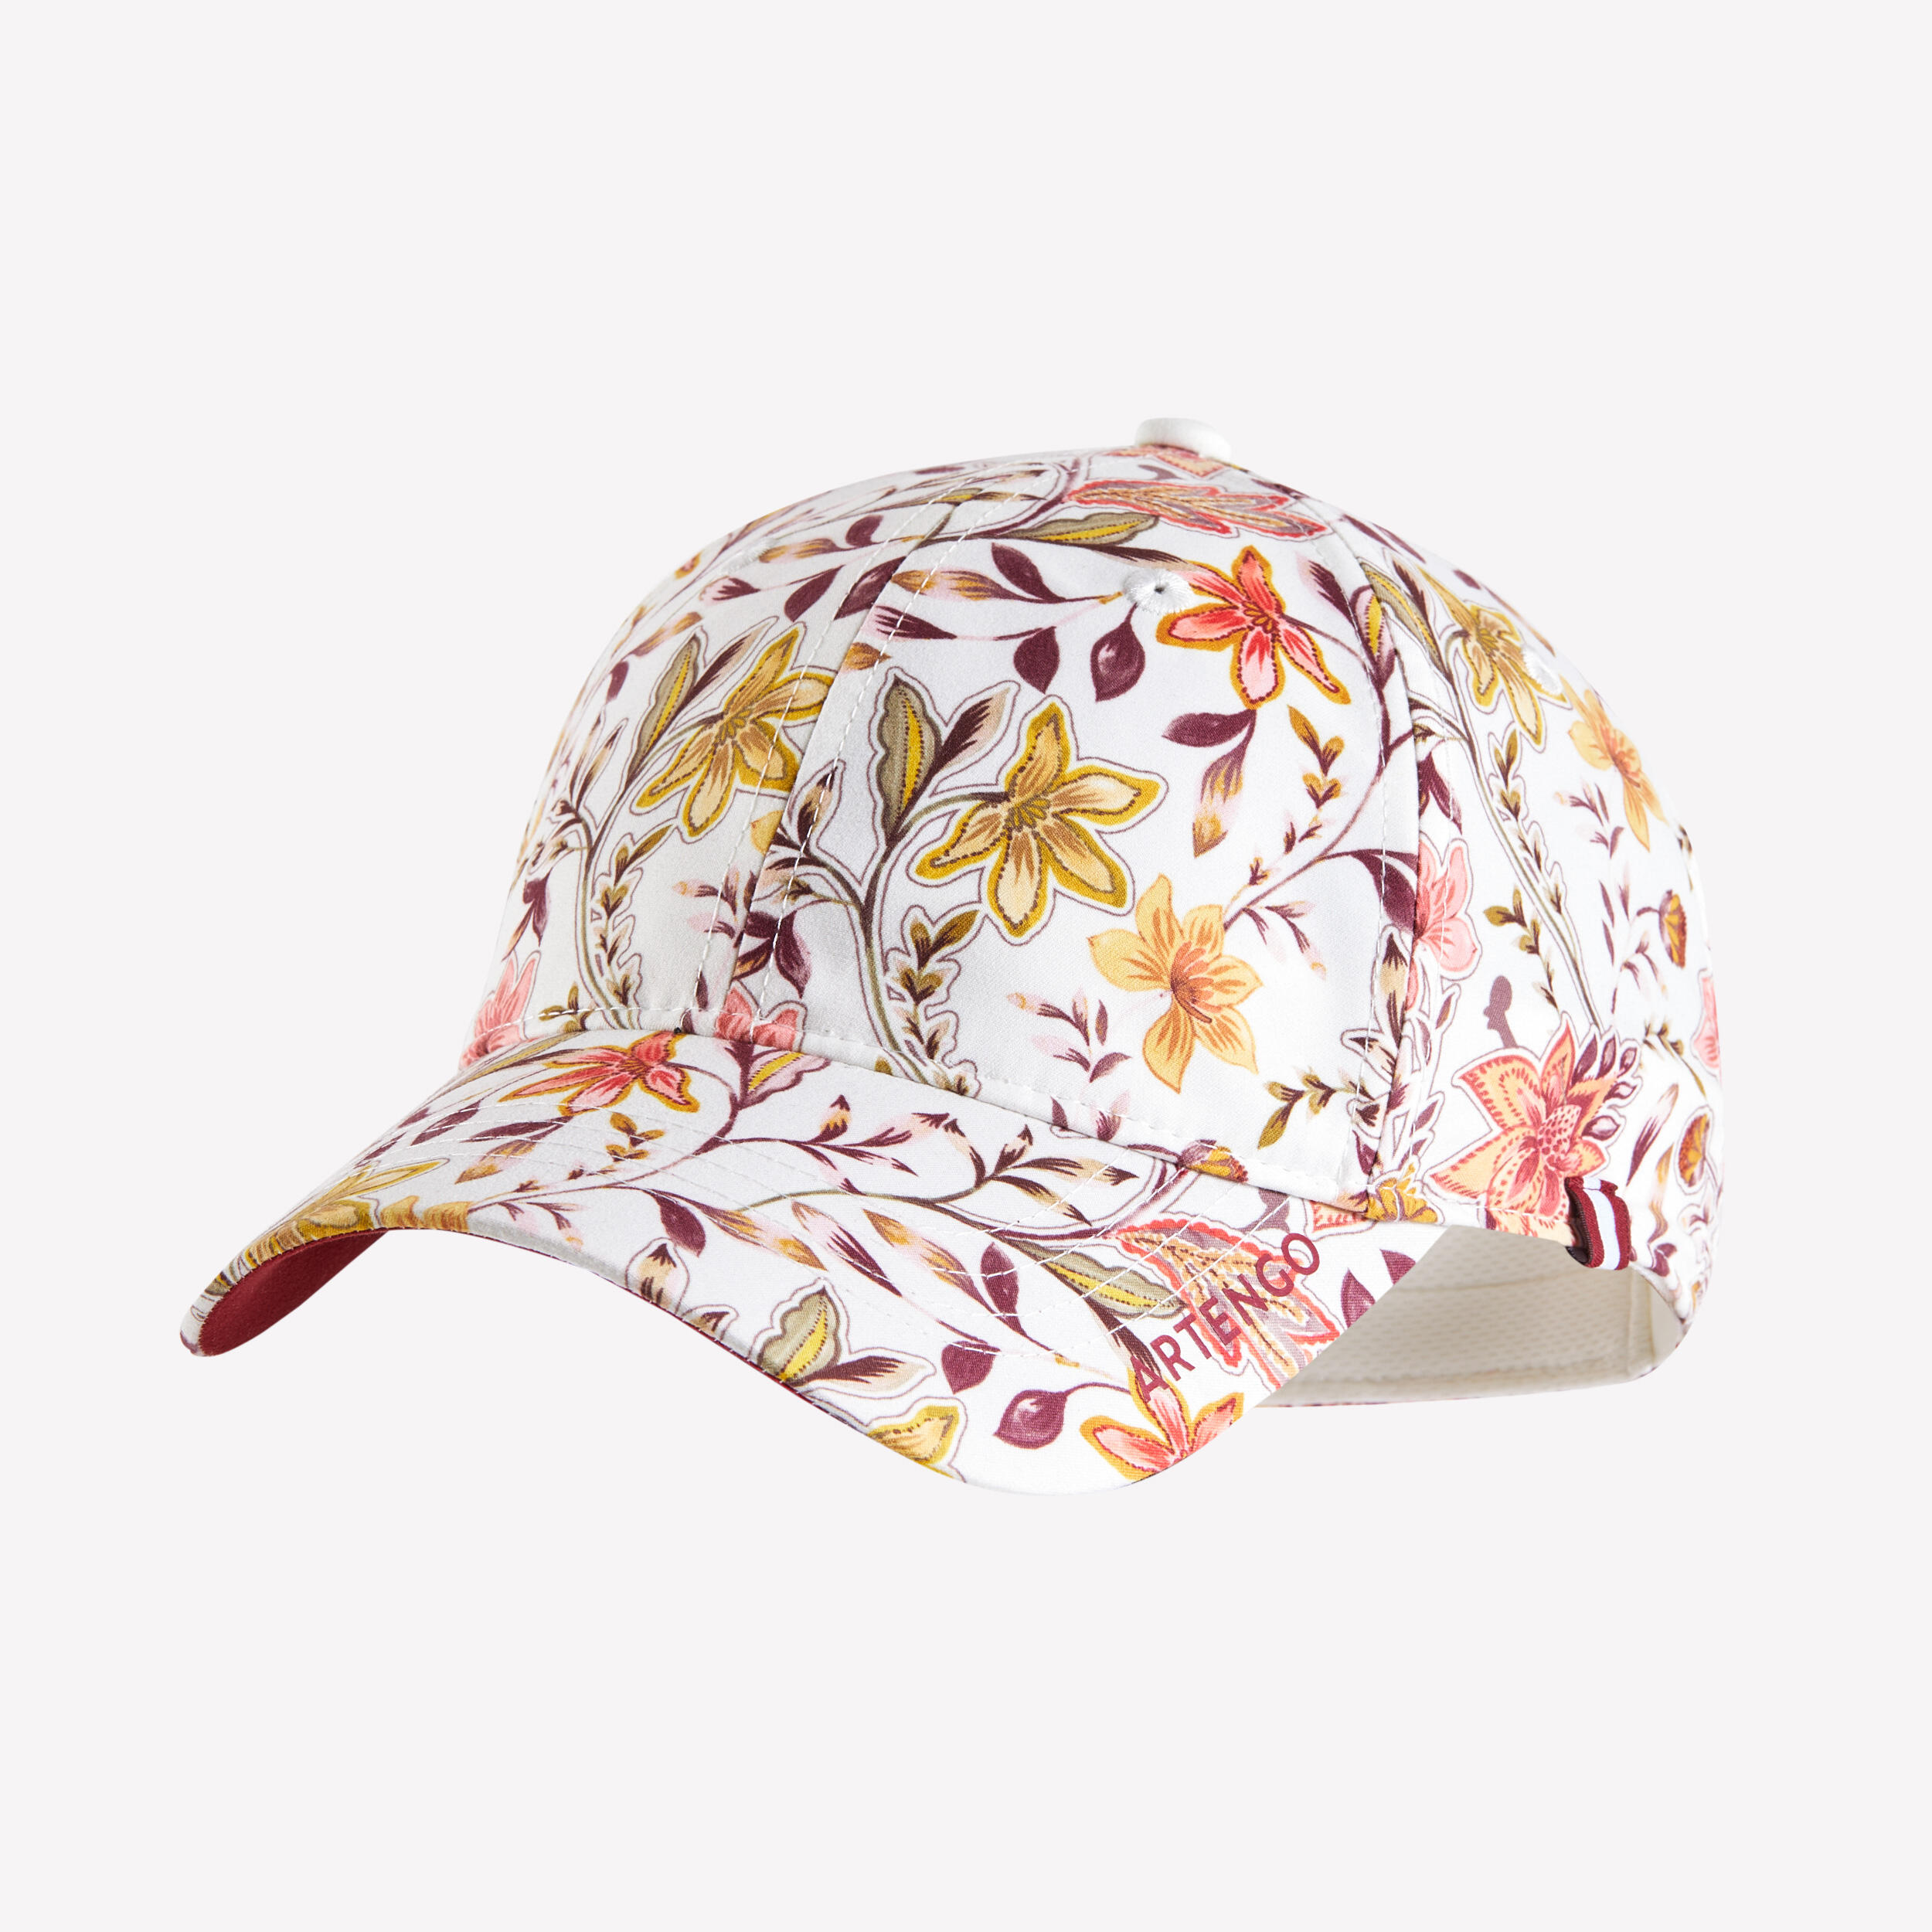 ARTENGO Tennis Cap Size 56 TC 500 - Beige Floral Print